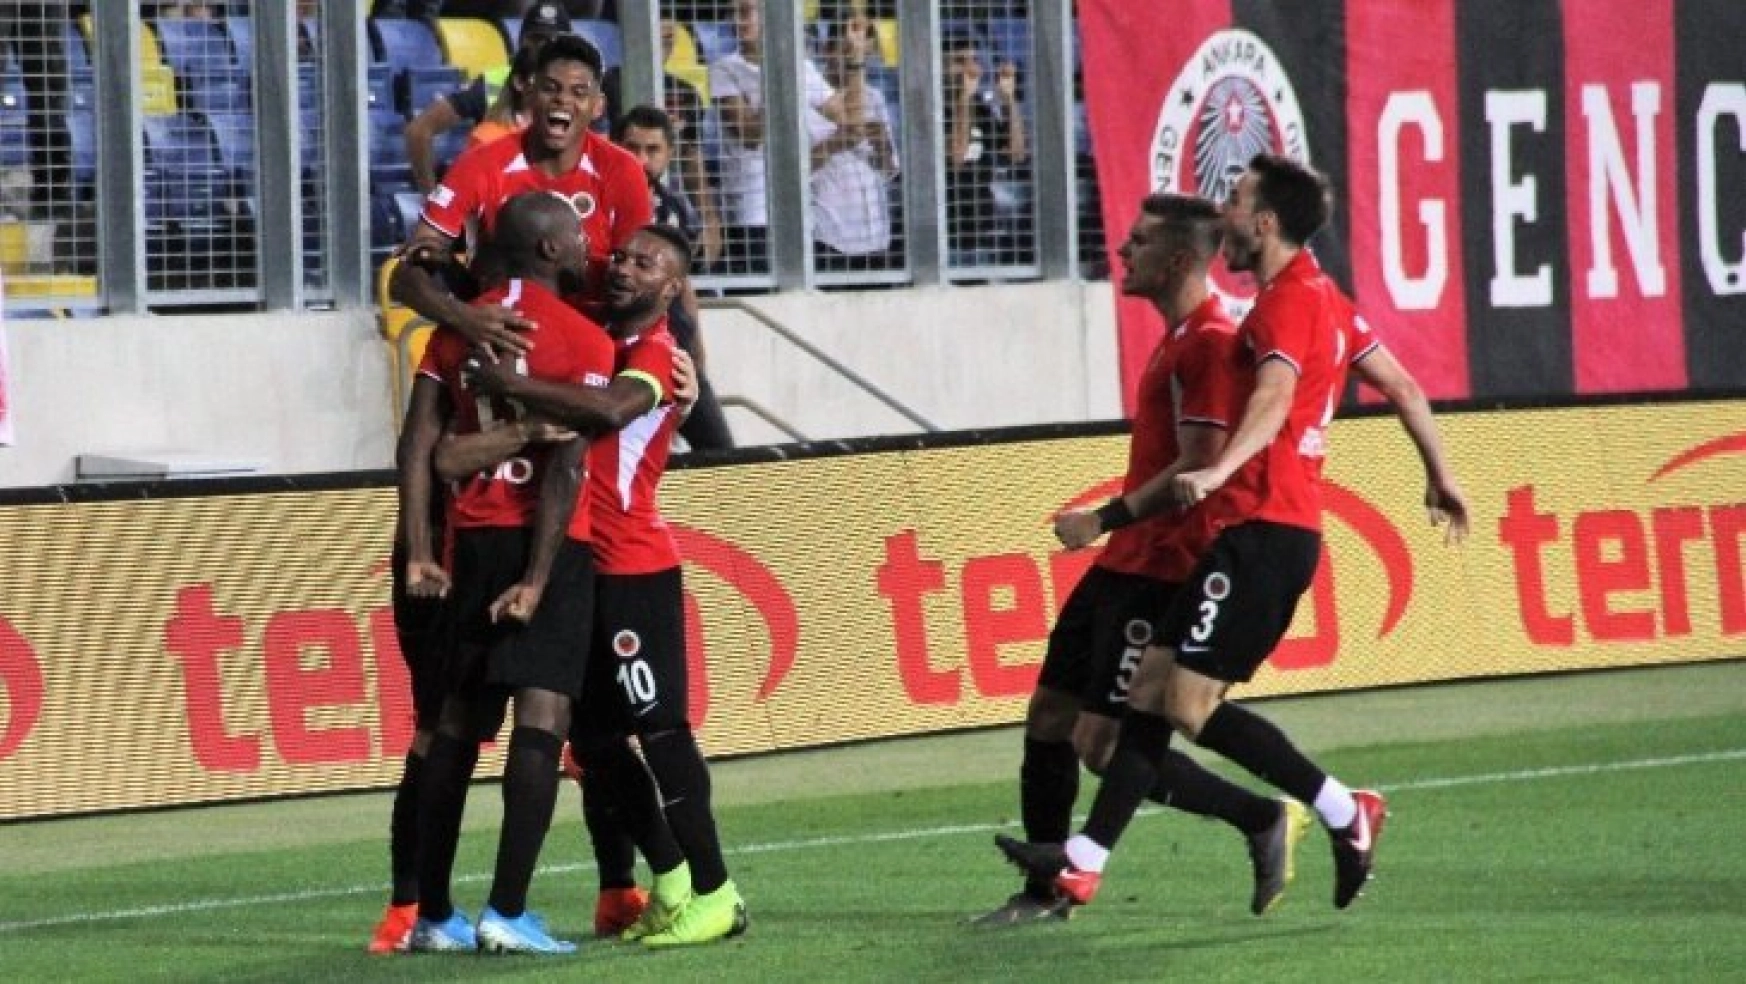 Süper Lig: Gençlerbirliği: 1 - Medipol Başakşehir: 0 (İlk yarı)